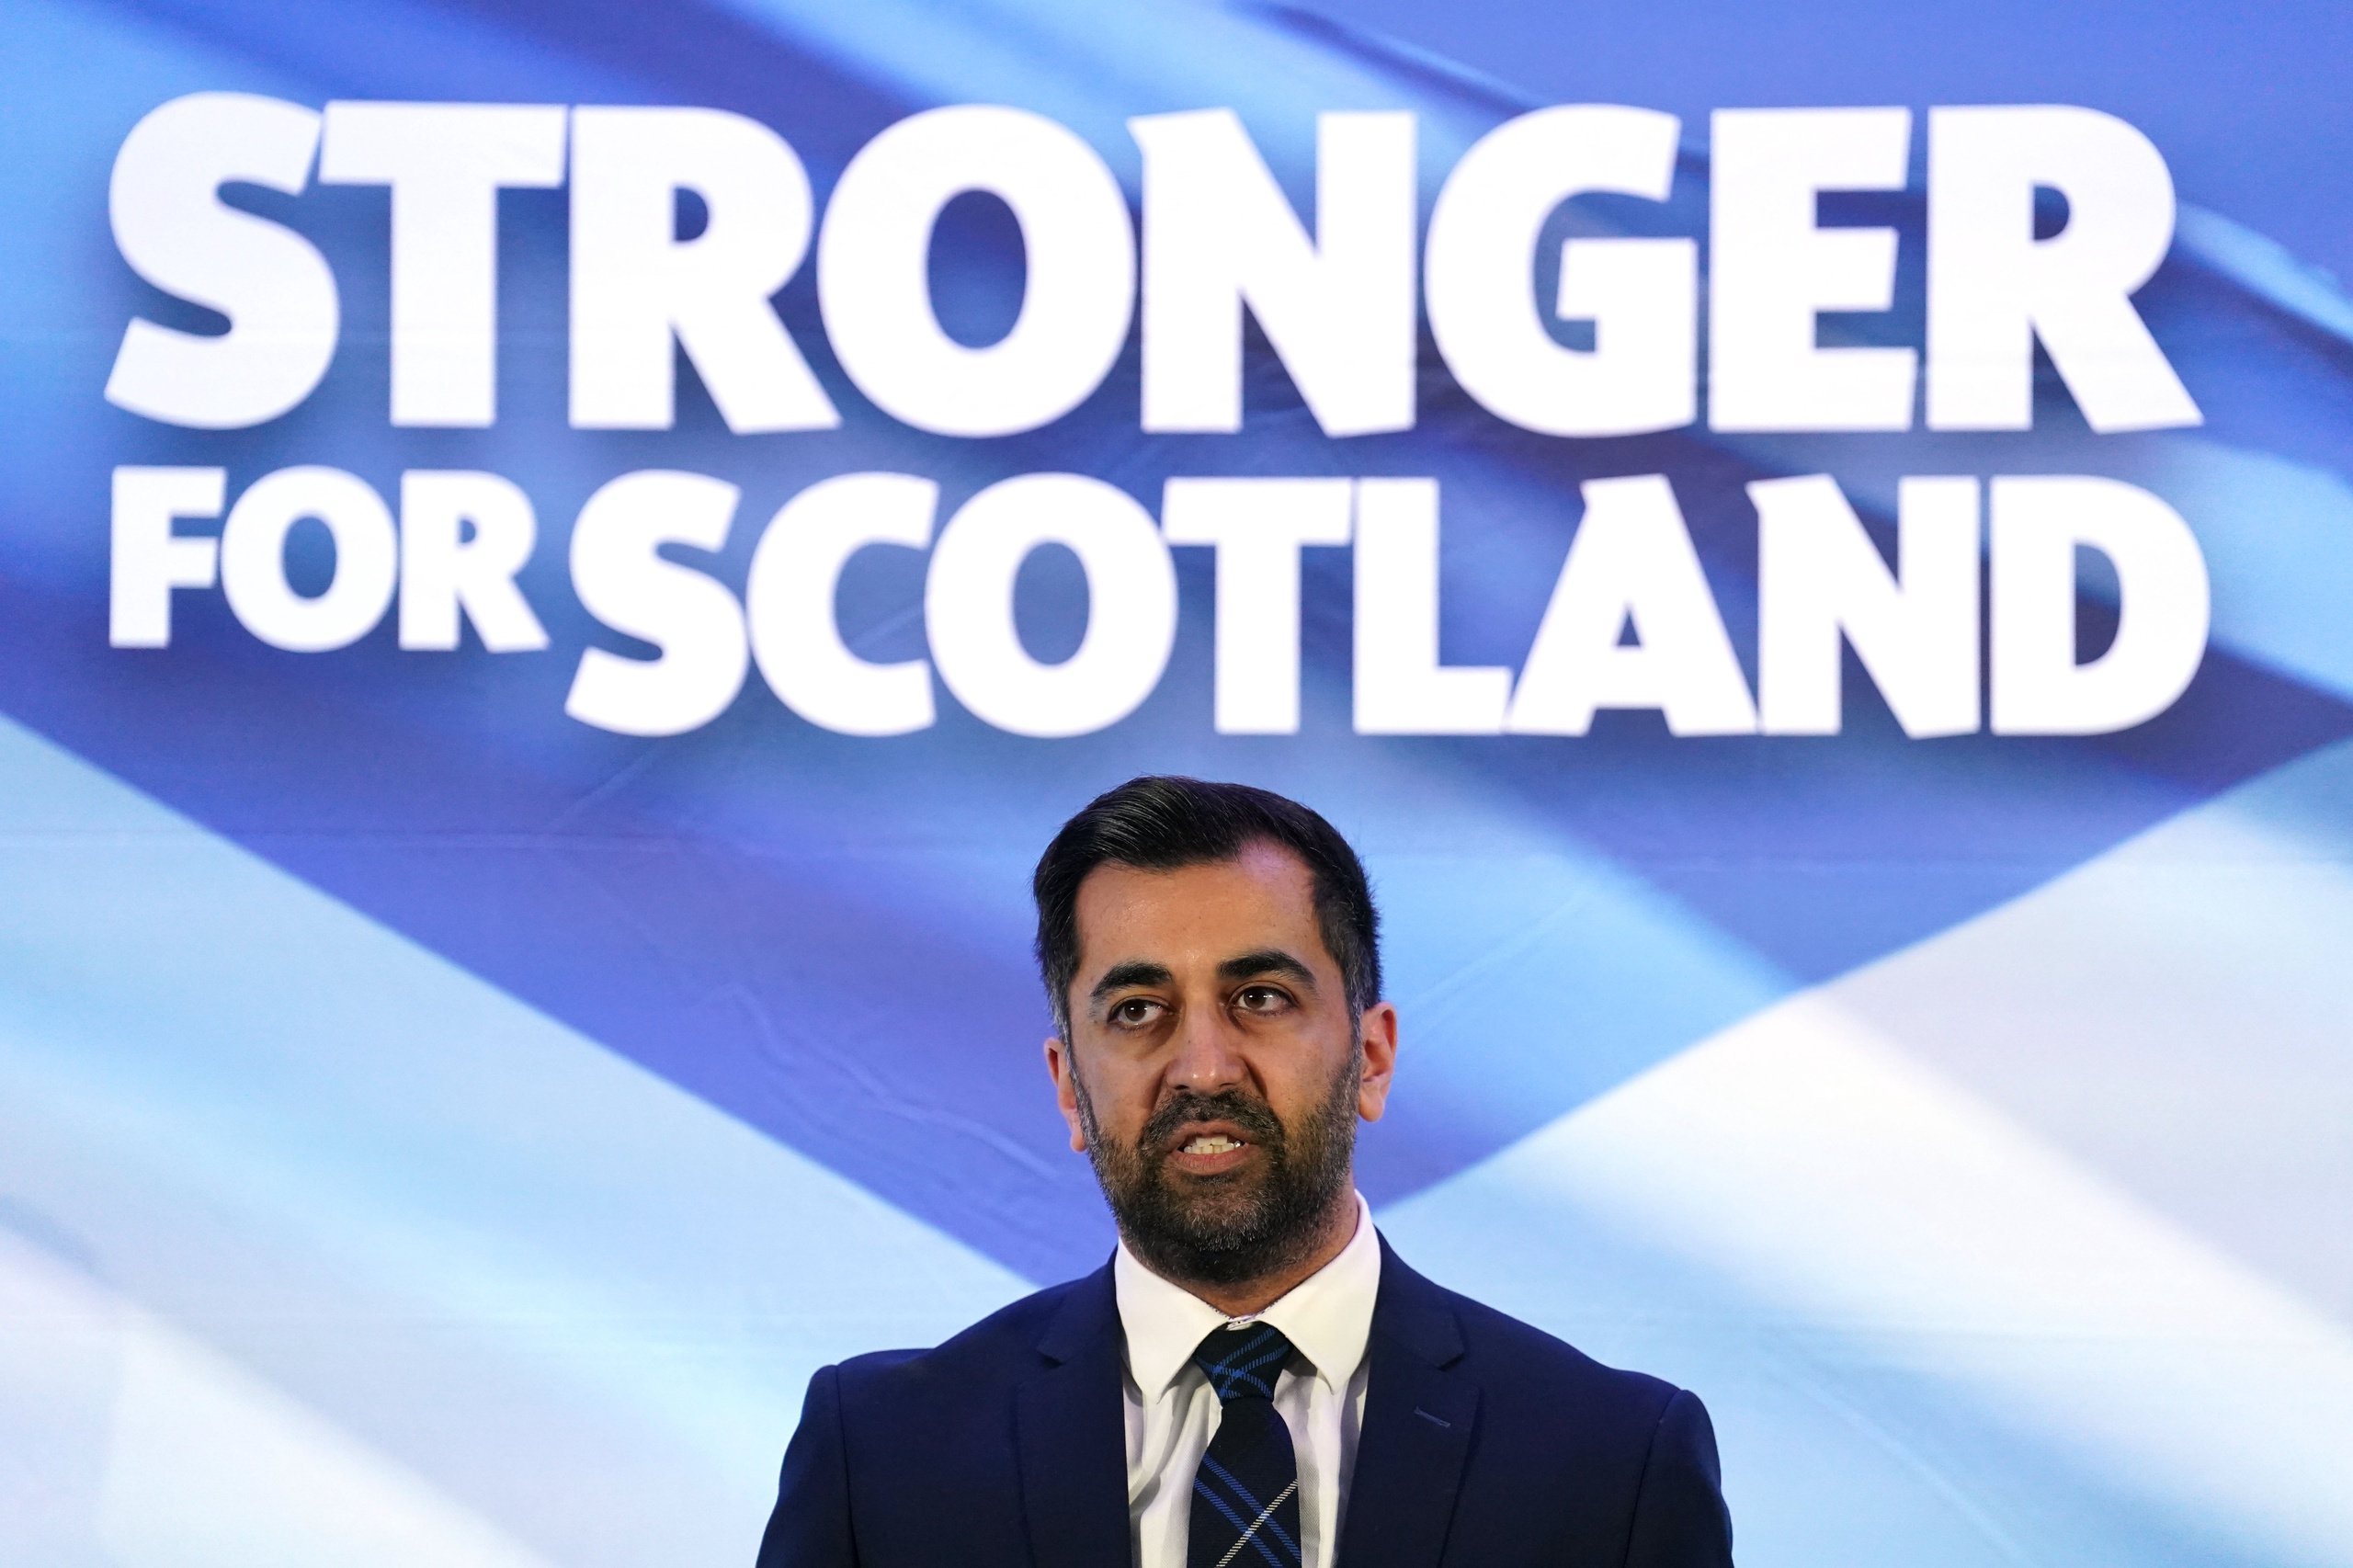 De 37-jarige Humza Yousaf volgt Nicola Sturgeon als leider van de Scottish National Party en is daarmee de nieuwe eerste minister van Schotland.